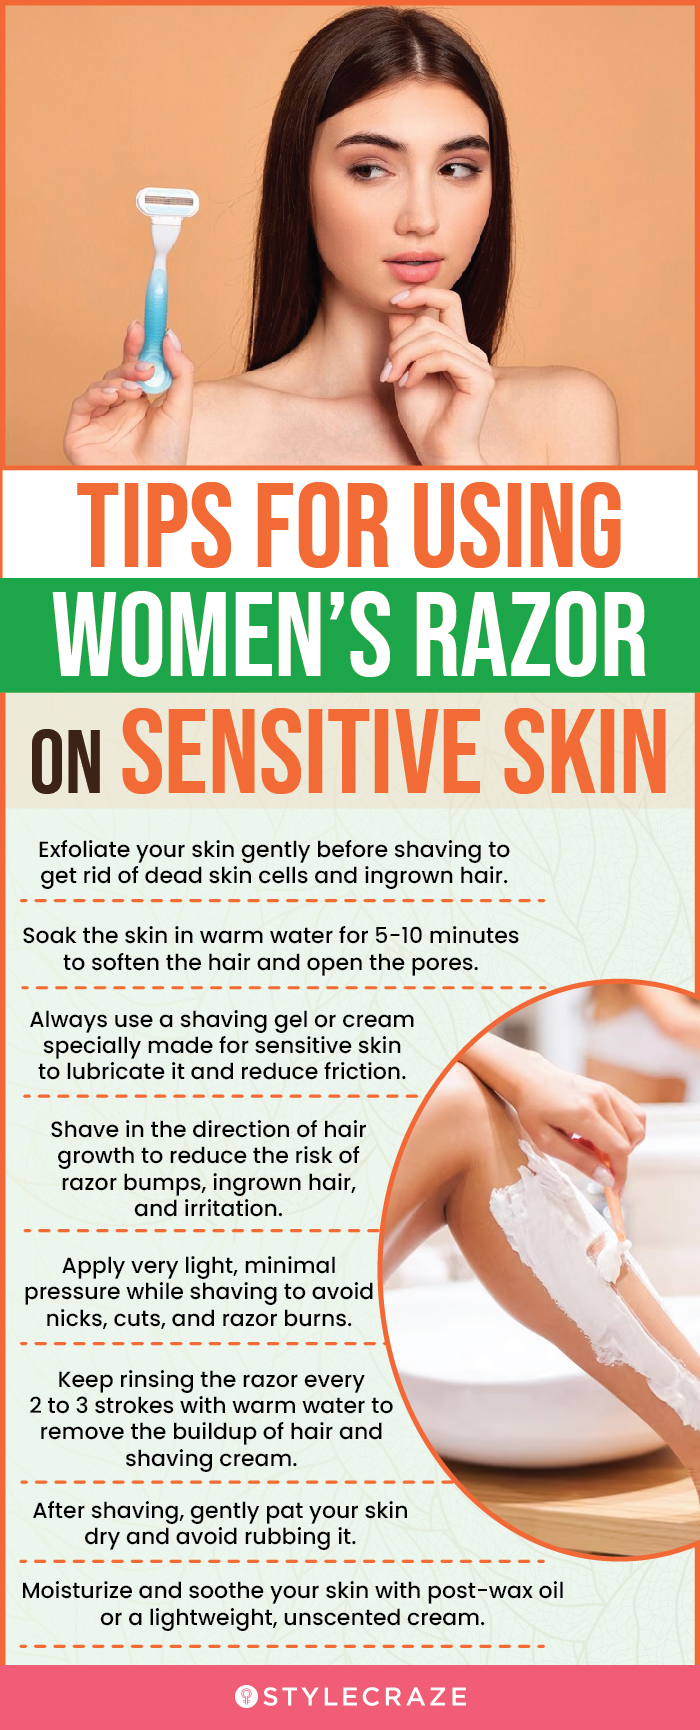 Tips For Using Women’s Razor On Sensitive Skin (infographic)